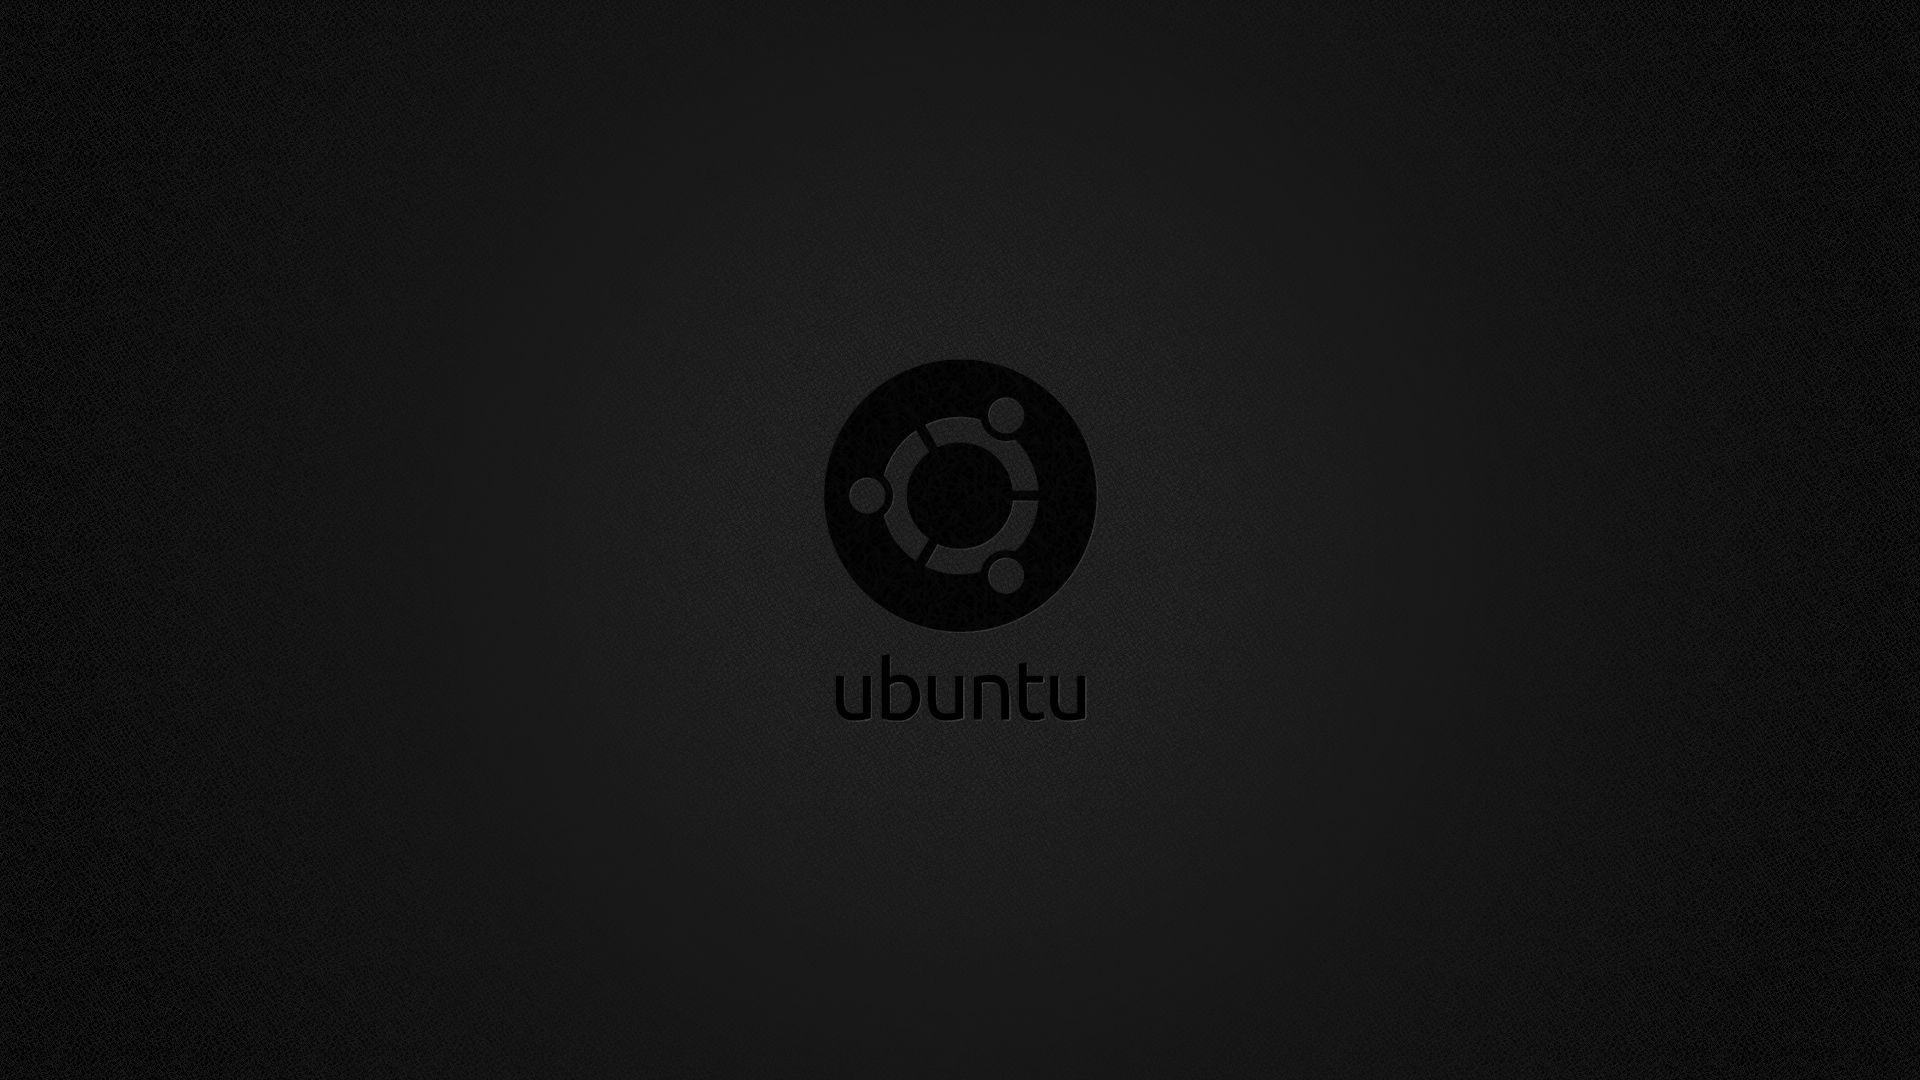 Dark Ubuntu Wallpaper Free Dark Ubuntu Background